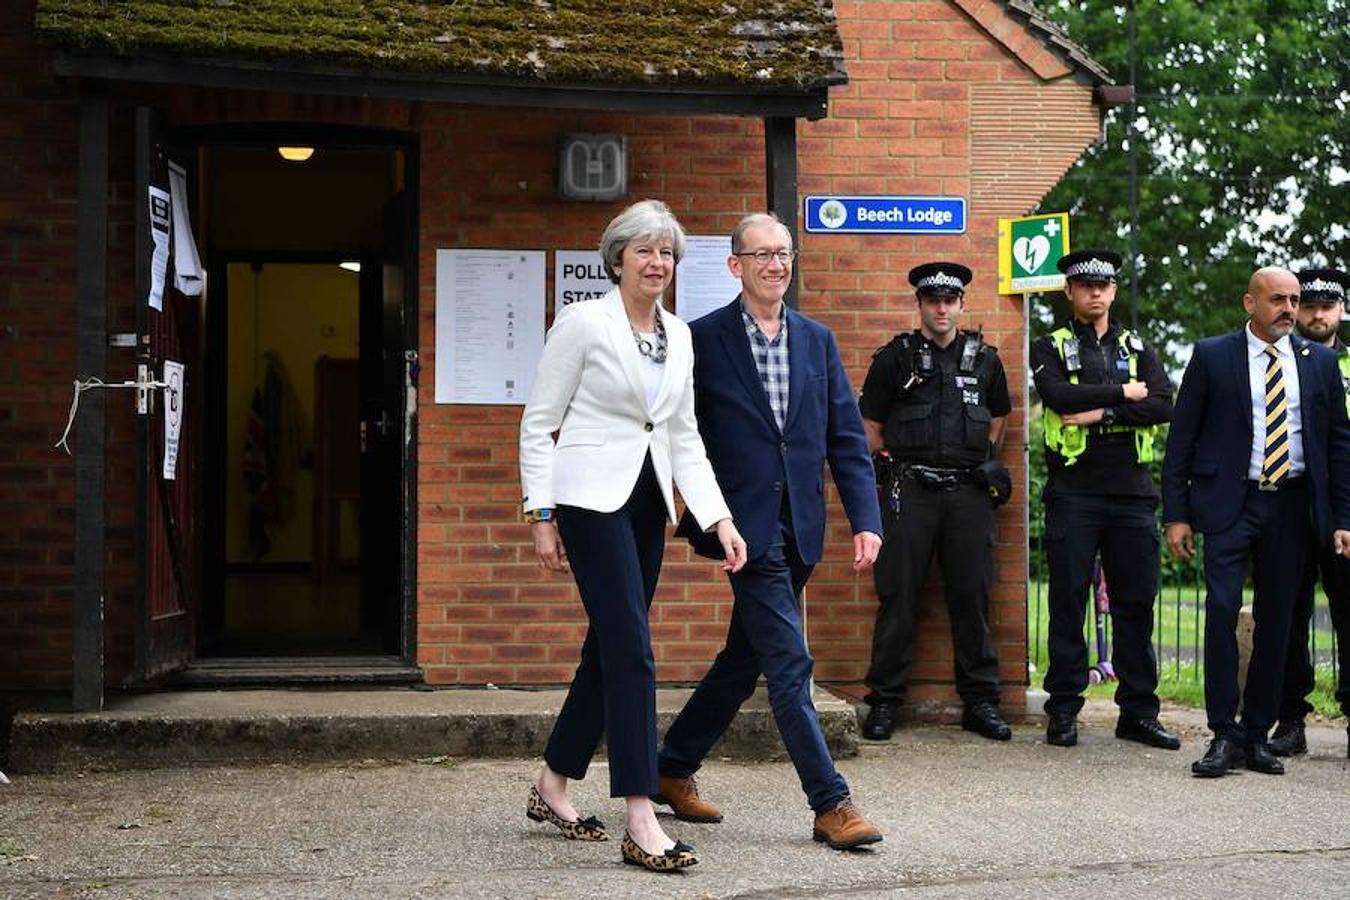 Theresay May fue a votar junto a su marido en Londres